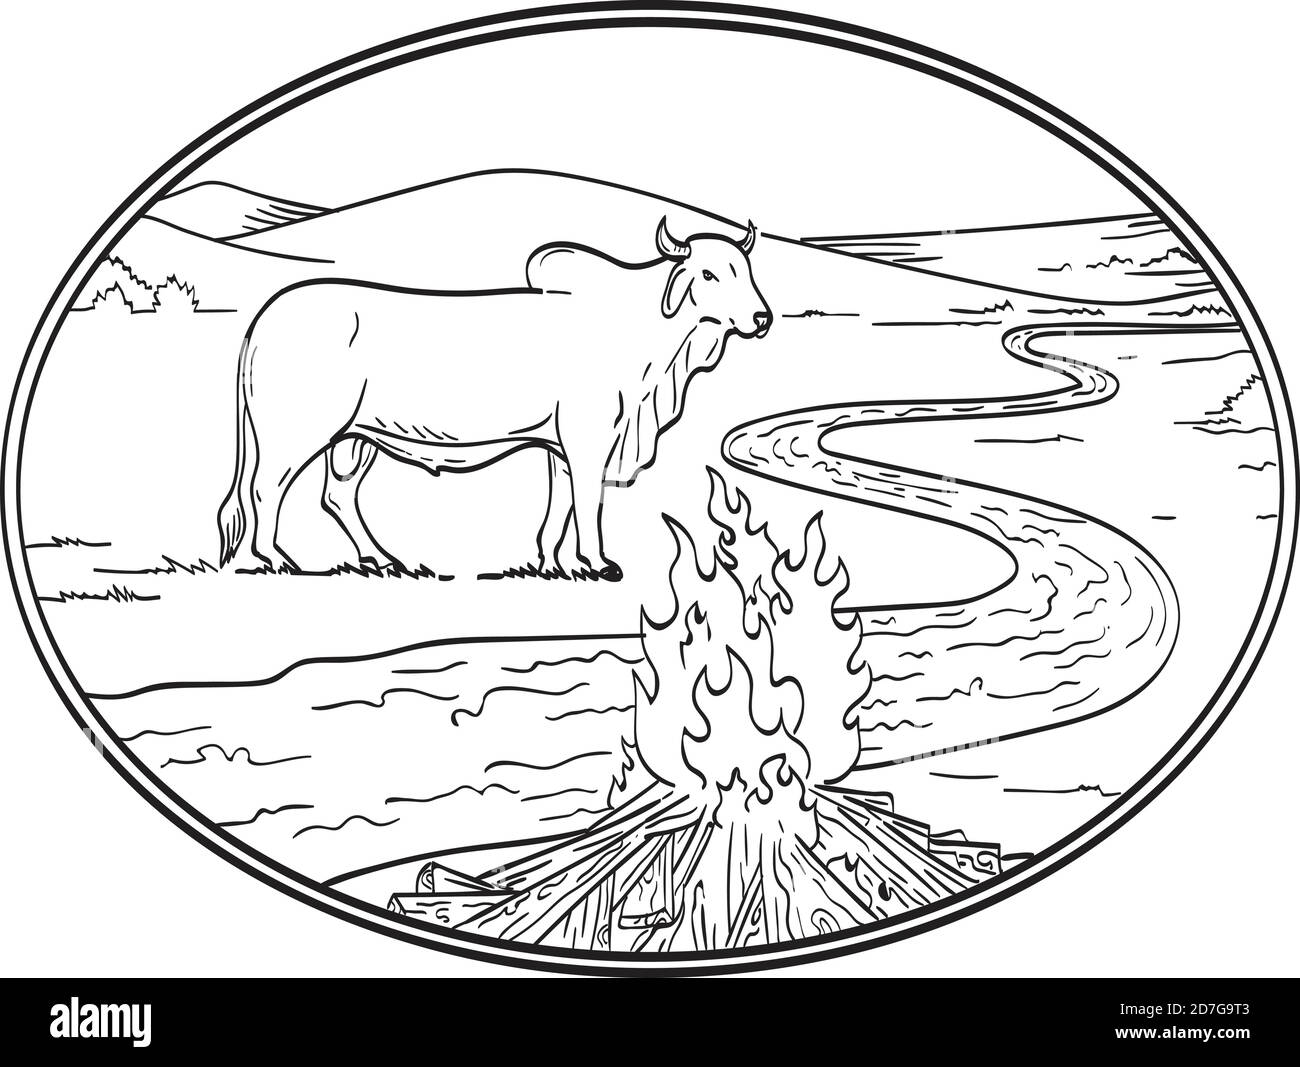 Linie Art Zeichnung Illustration eines Brahman Stier, eine amerikanische Rasse von Zebuine Rindfleisch Rinder mit gewundenen Fluss oder Bach, Bergkette und Lagerfeuer don Stock Vektor